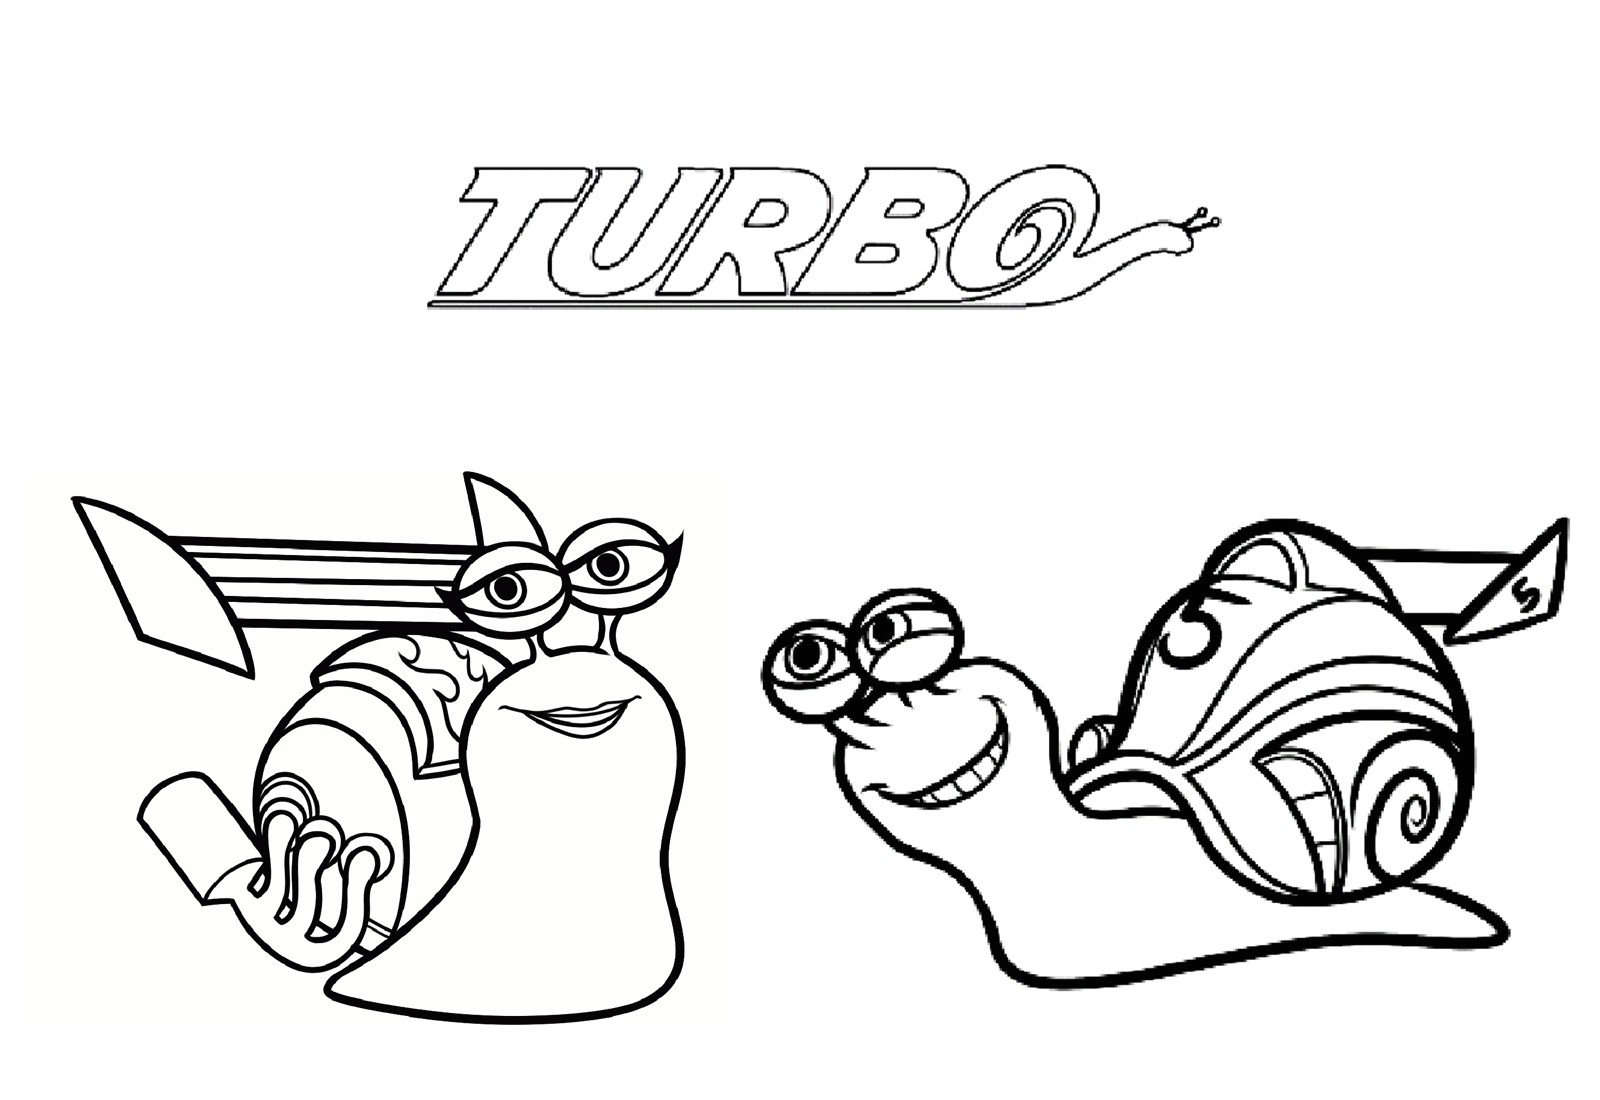 Image gratuit Turbo avec 2 escargots et le logo